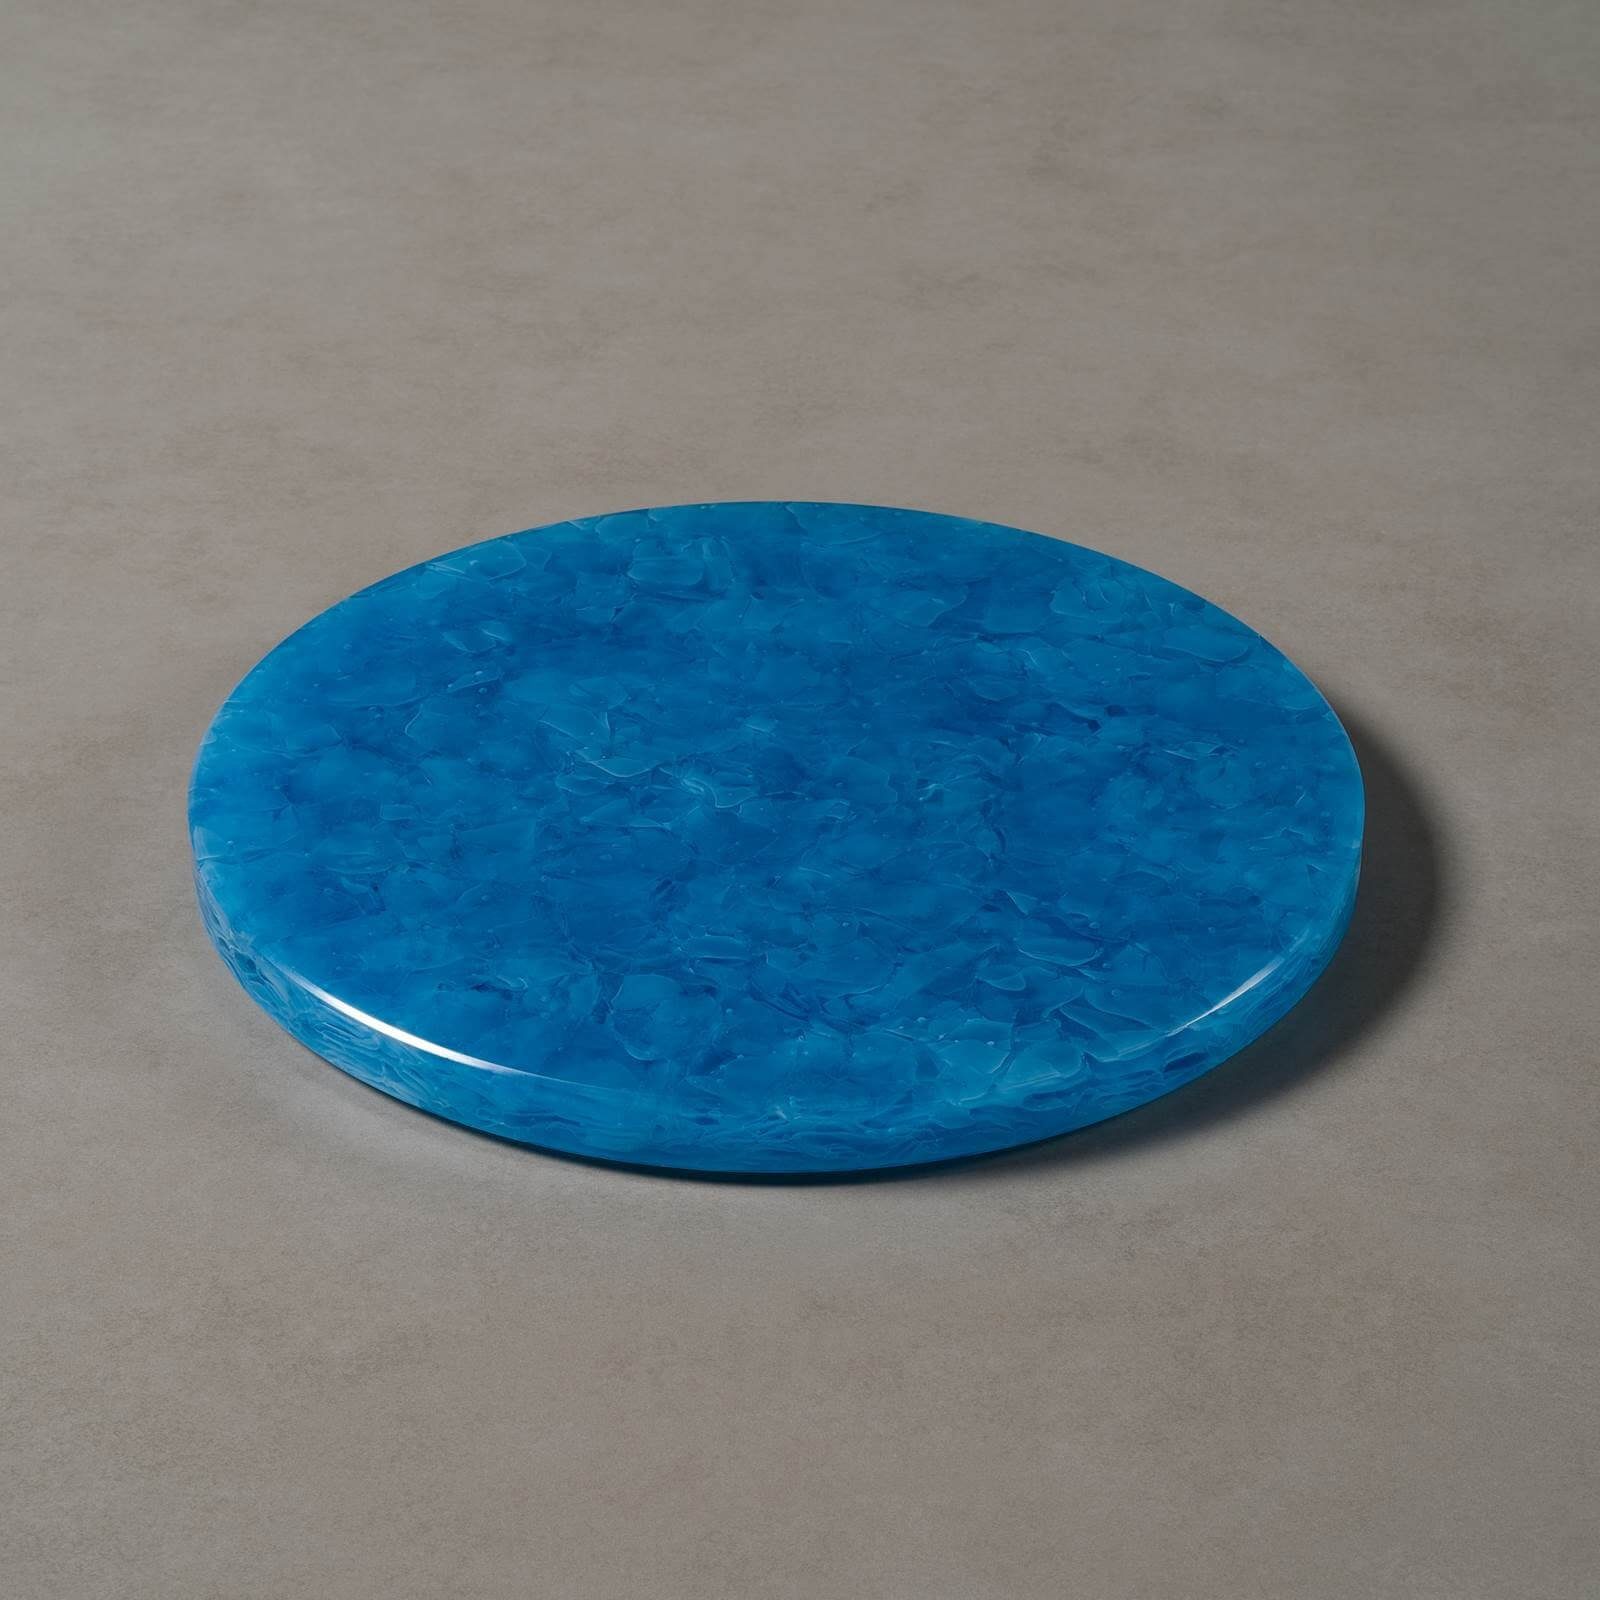 MAGNA Atelier Dekotablett CHEFCHAOUEN mit Ocean rund, Glaskeramik, Blue GLASKERAMIK, Käseplatte Ø30cm